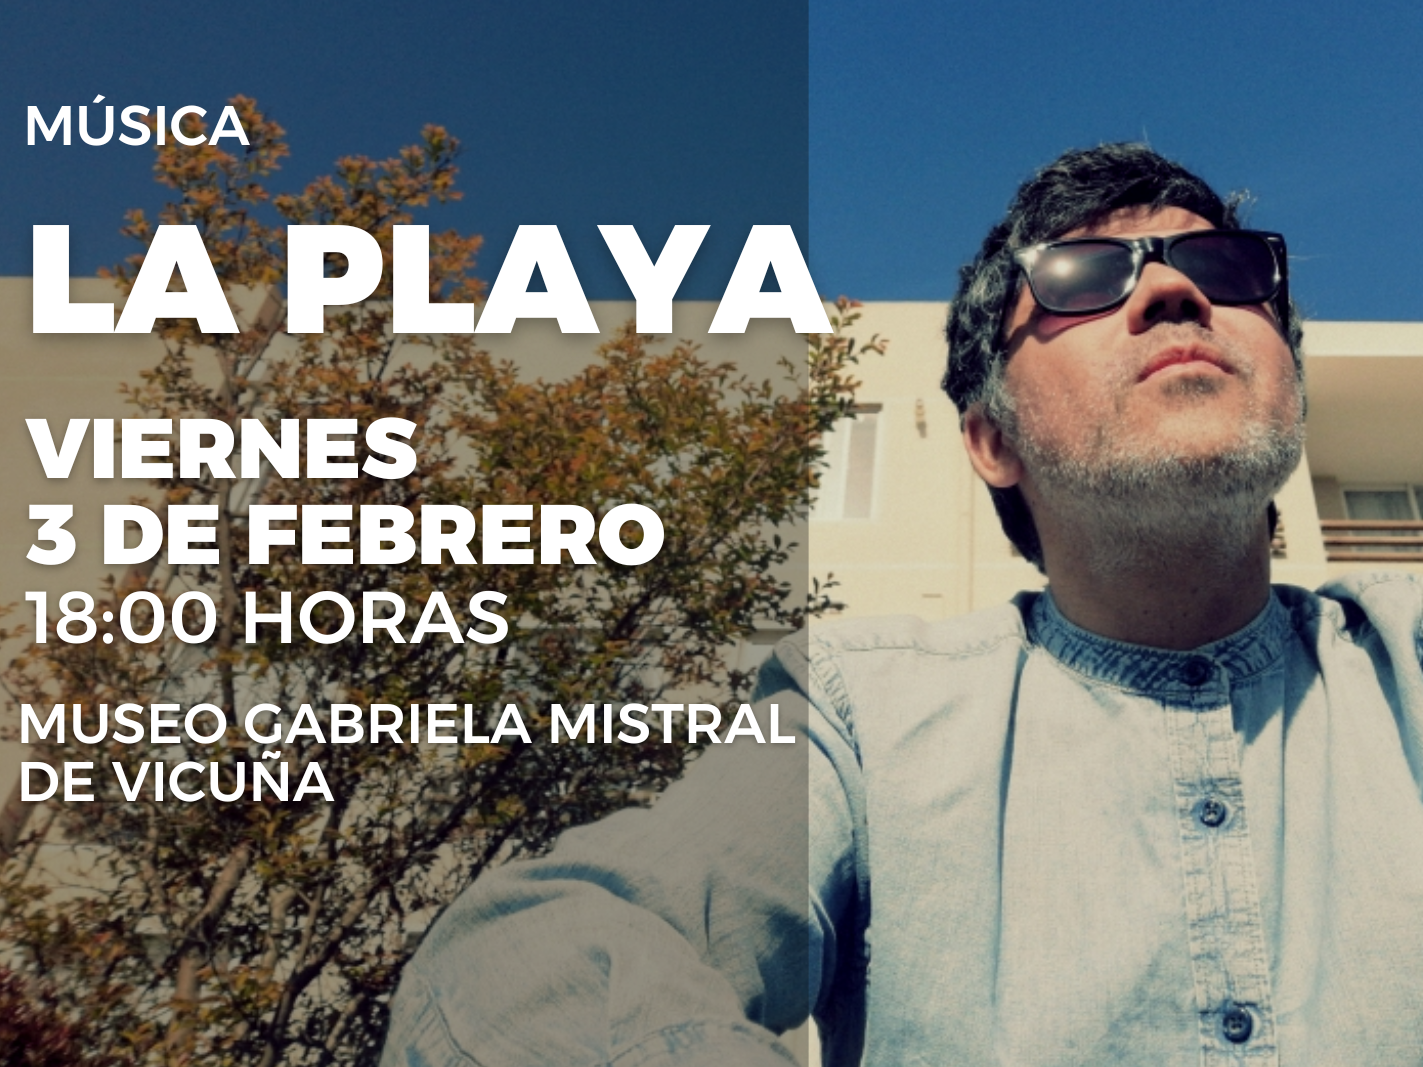 Jorge Barahona, cantautor y productor musica que se presenta bajo el seudónimo de La Playa